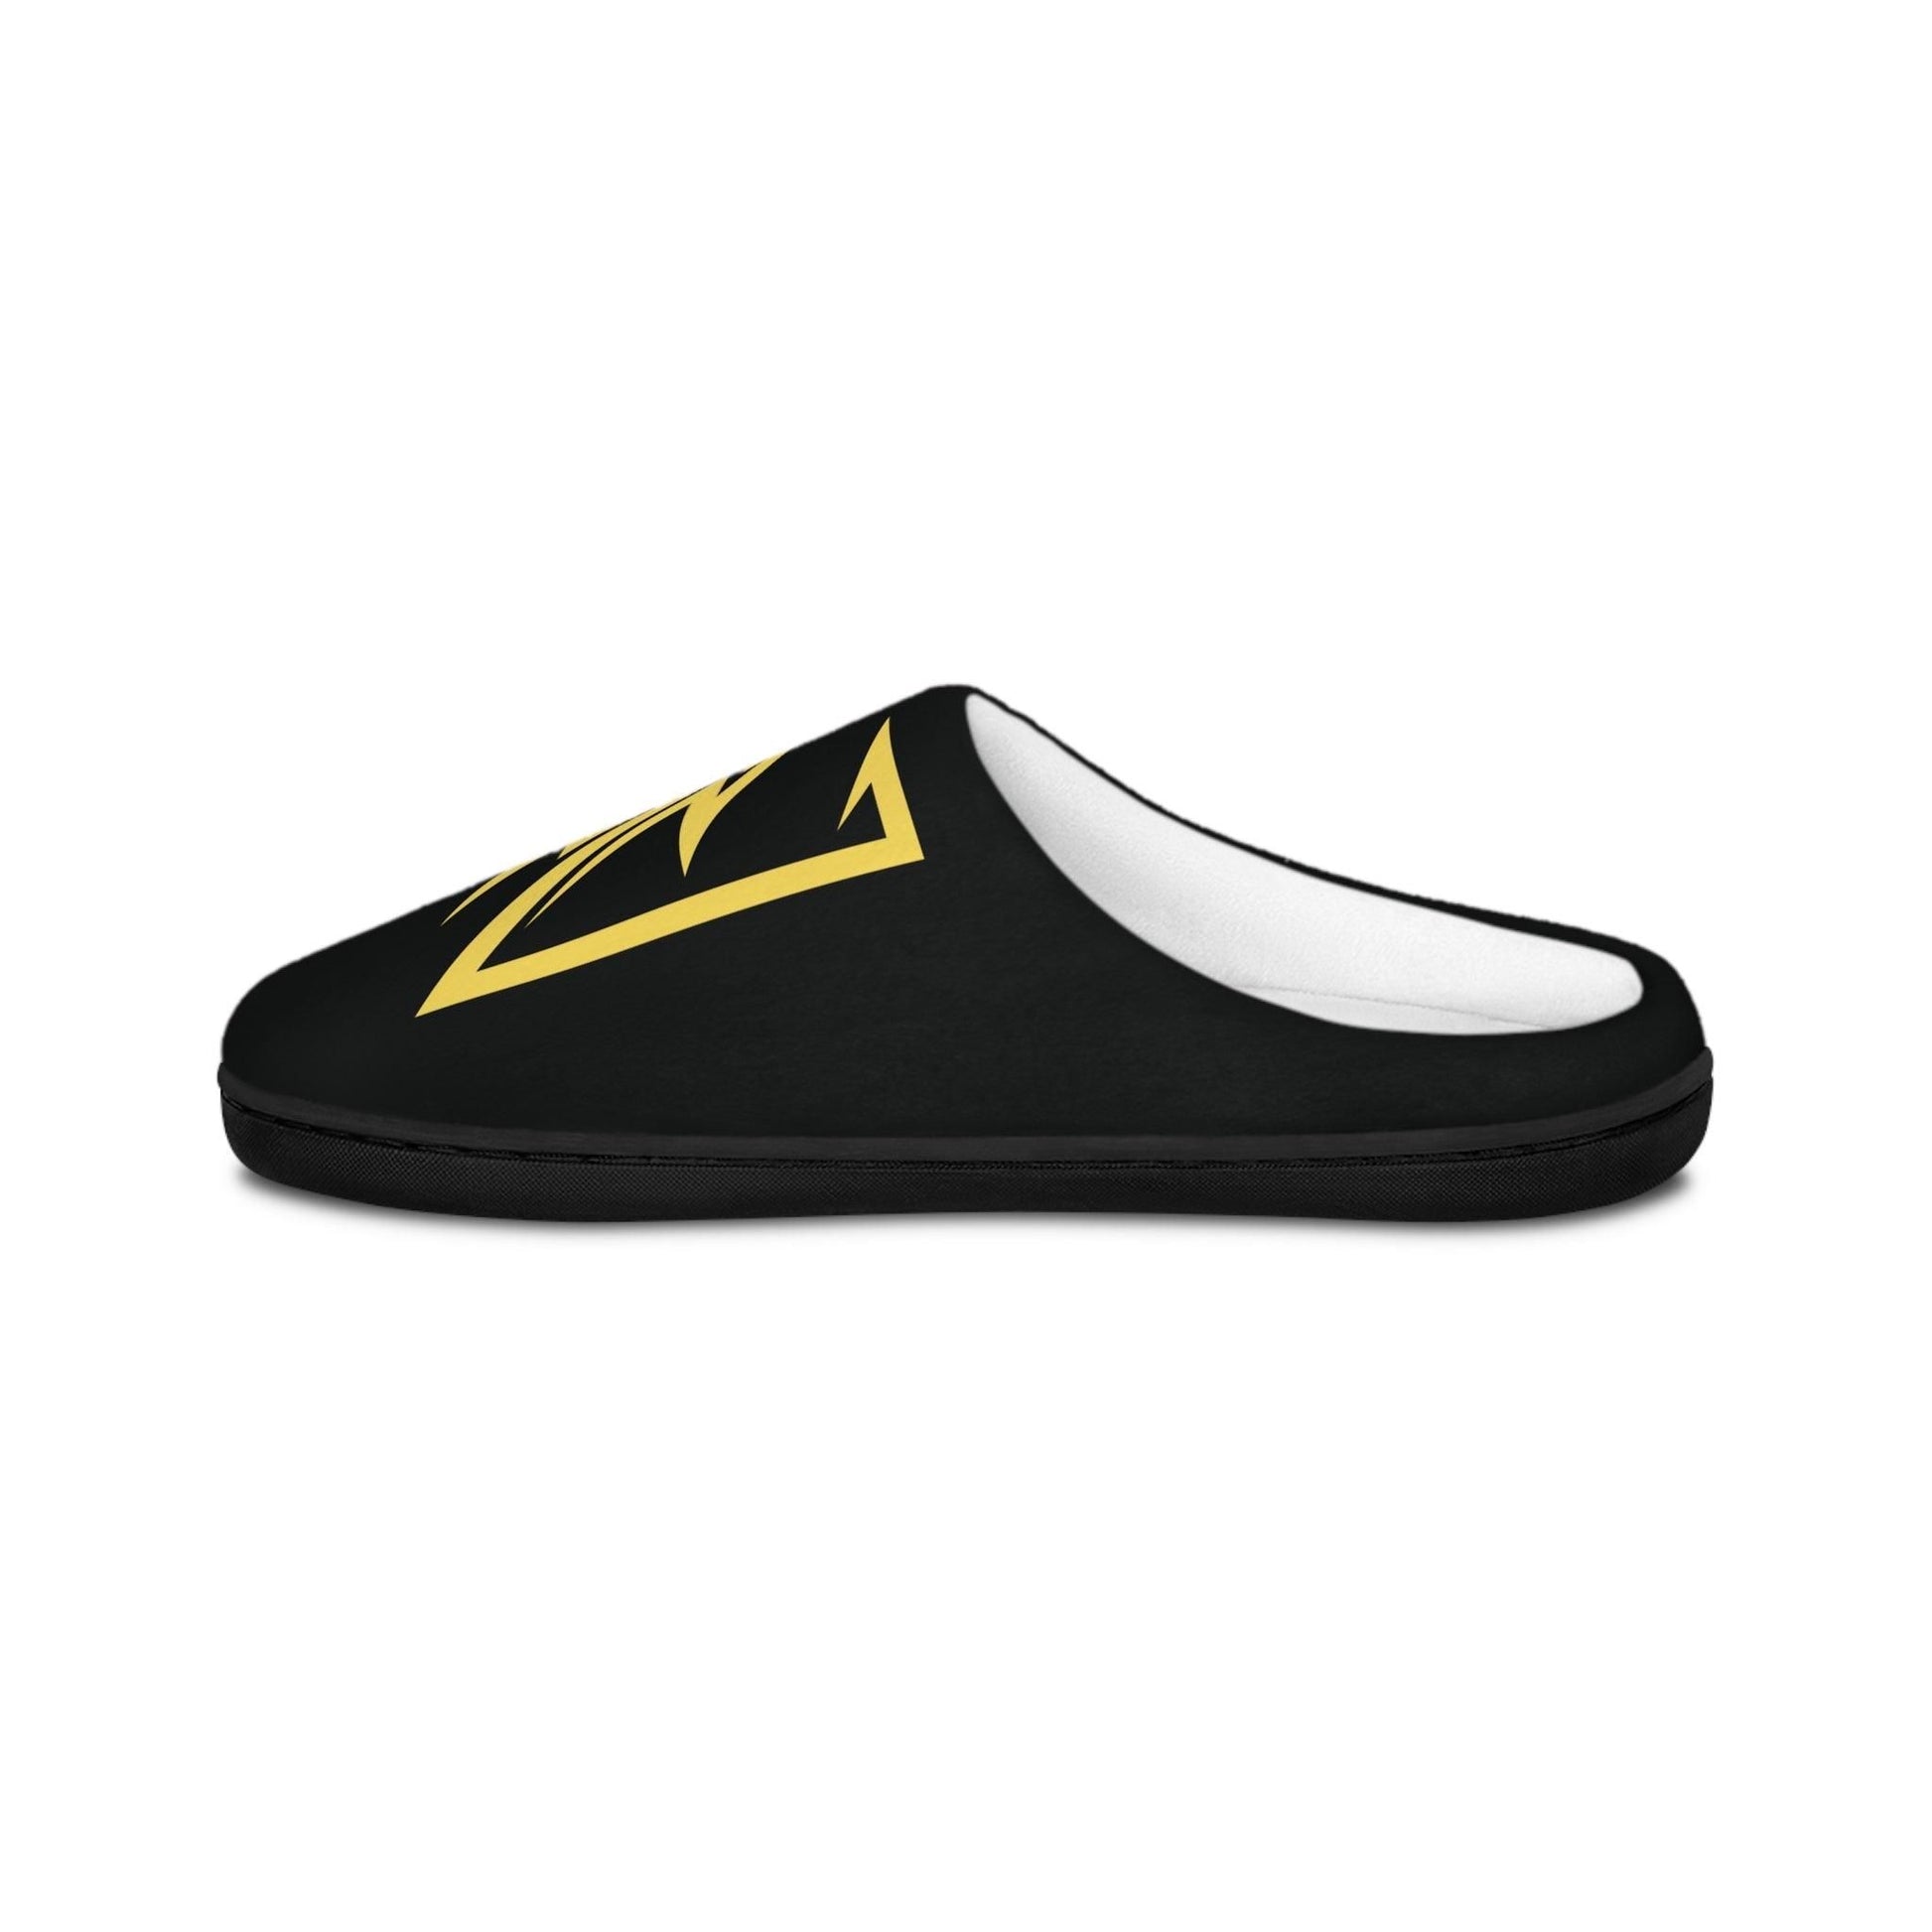 NX Vogue Logo Men's Indoor Slippers Shoes   